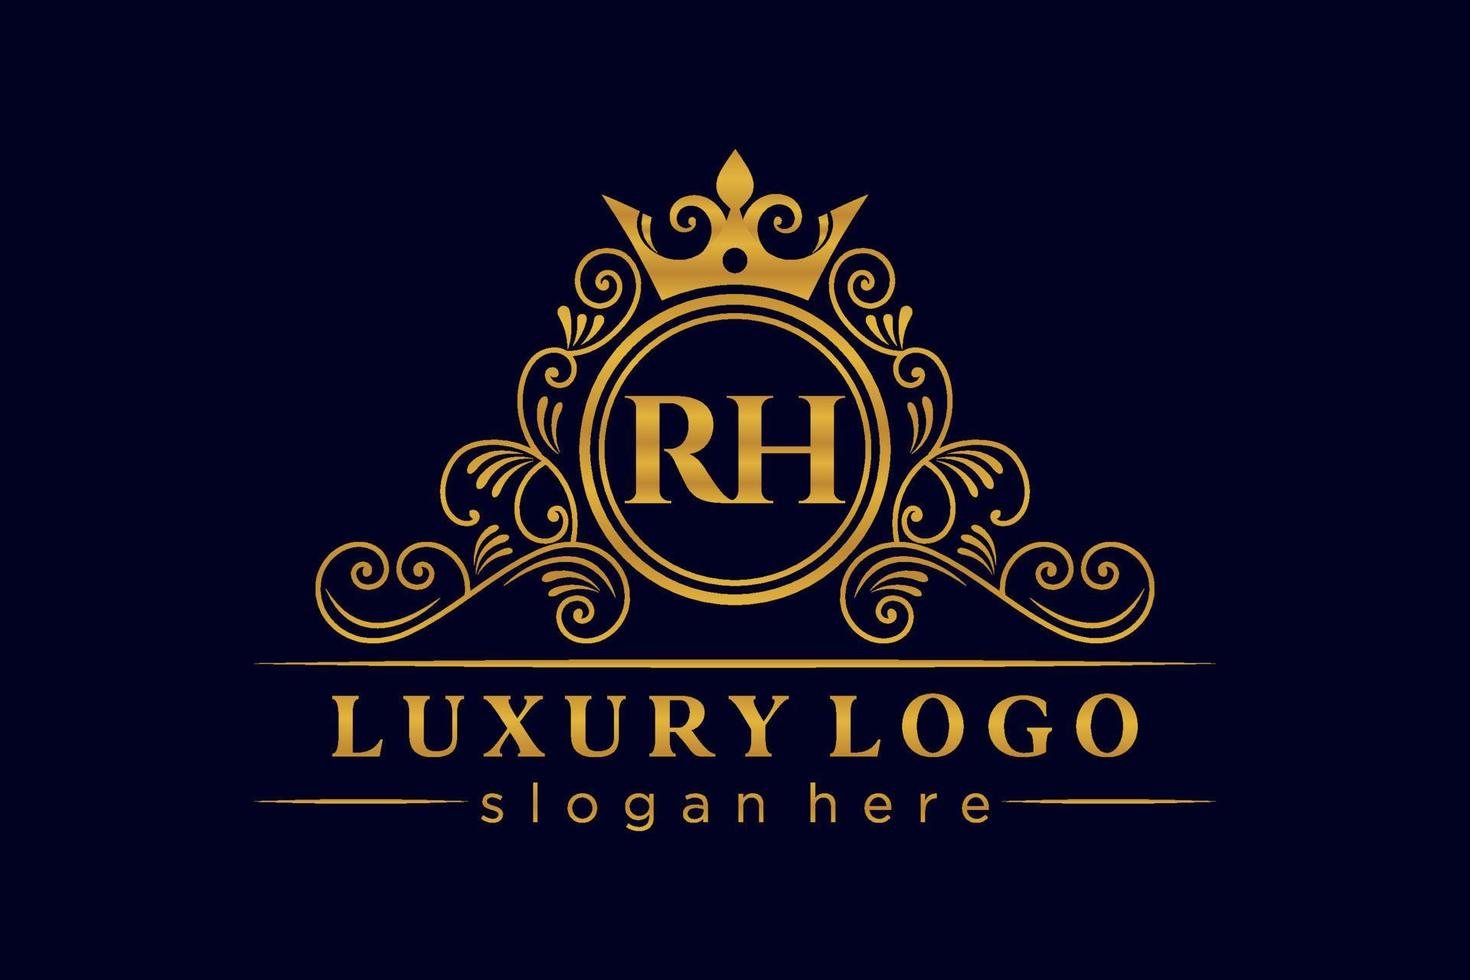 r letra inicial oro caligráfico femenino floral dibujado a mano monograma heráldico antiguo estilo vintage diseño de logotipo de lujo vector premium